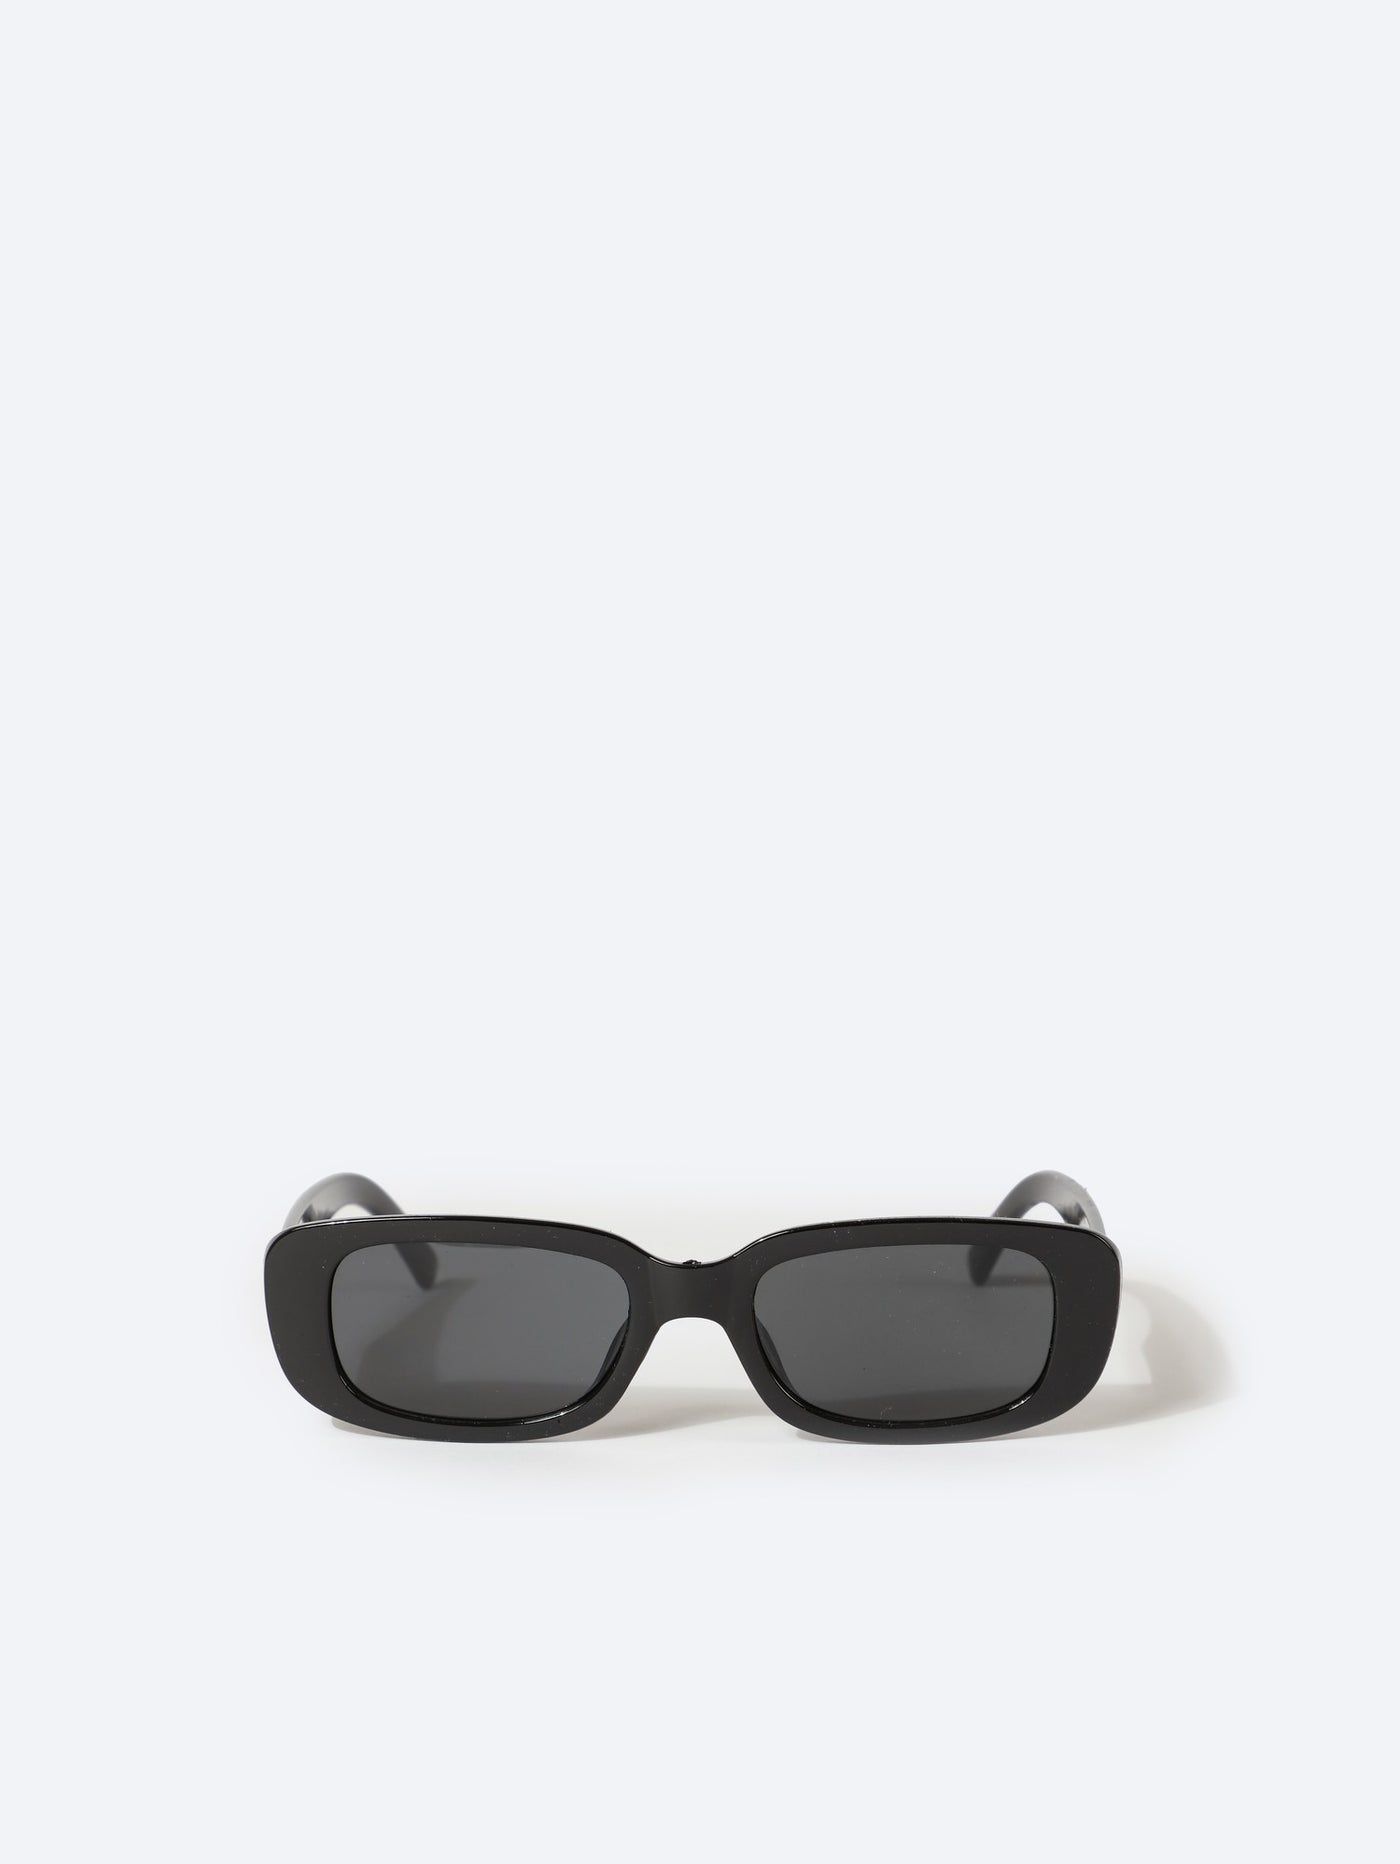 Sunglasses - Square Frame - Set of 2